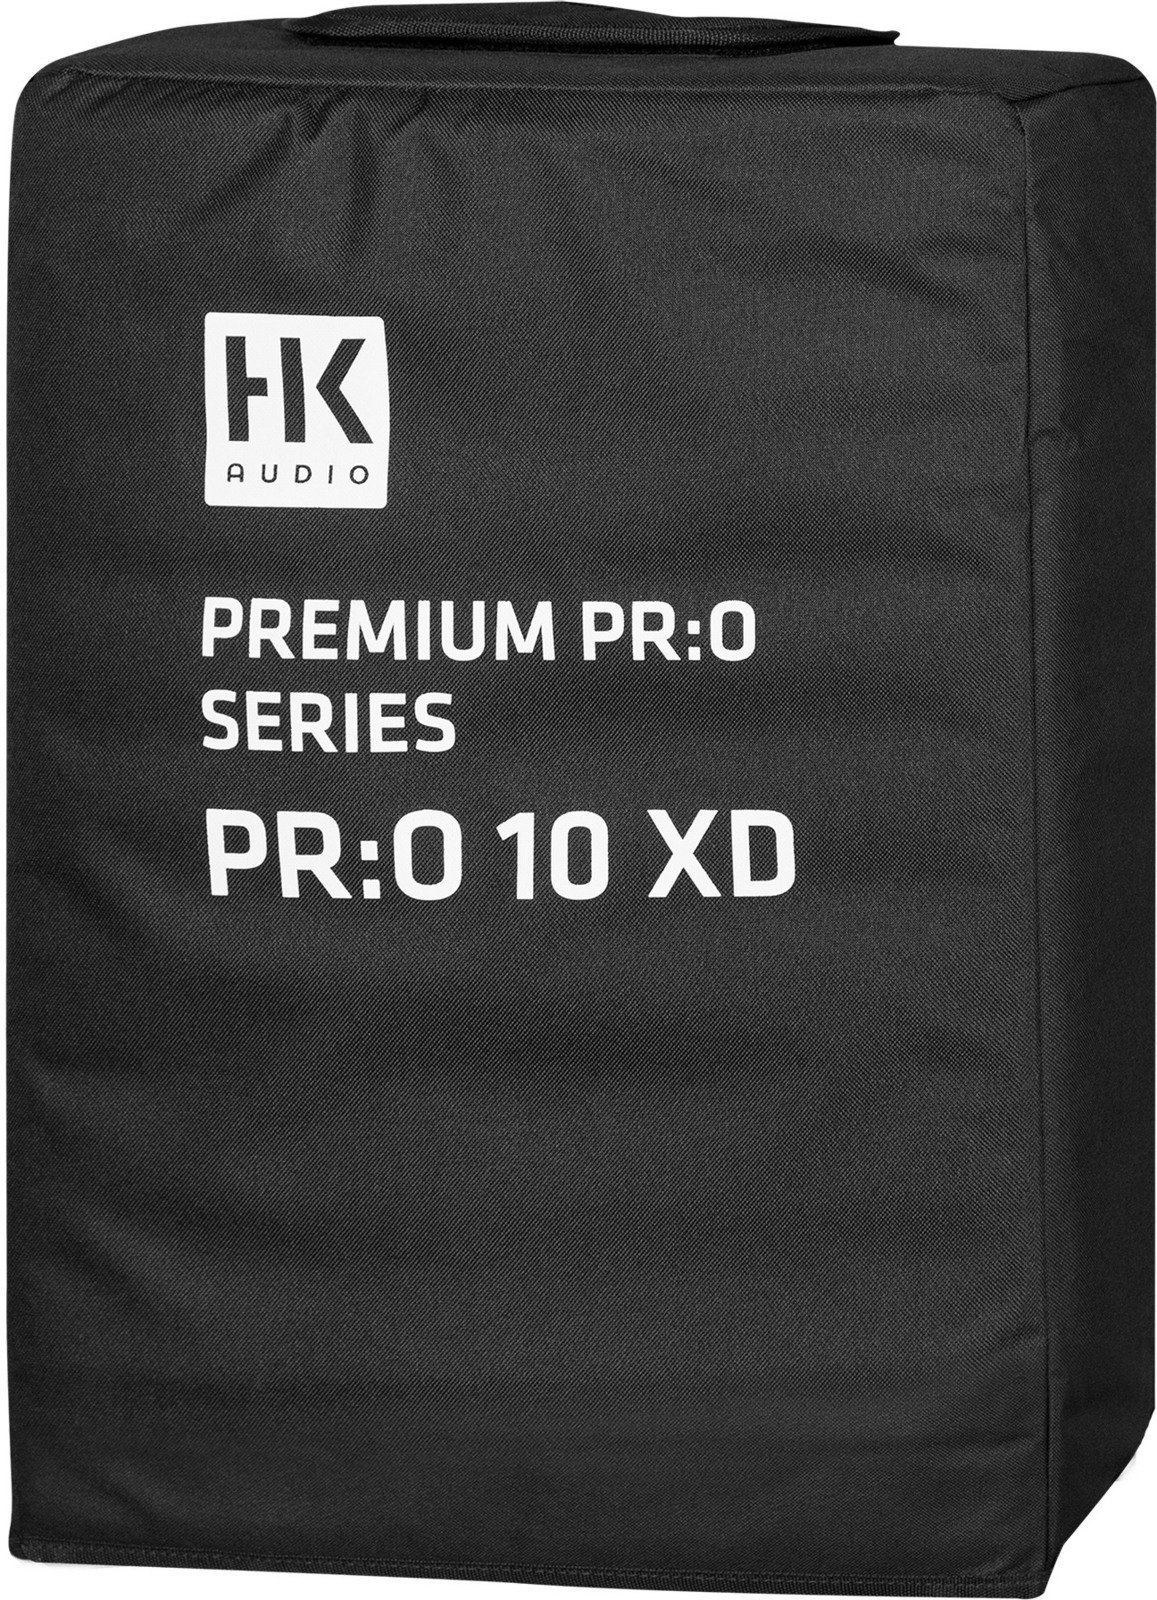 Τσάντα για Ηχεία HK Audio PR:O 10 XD Cover